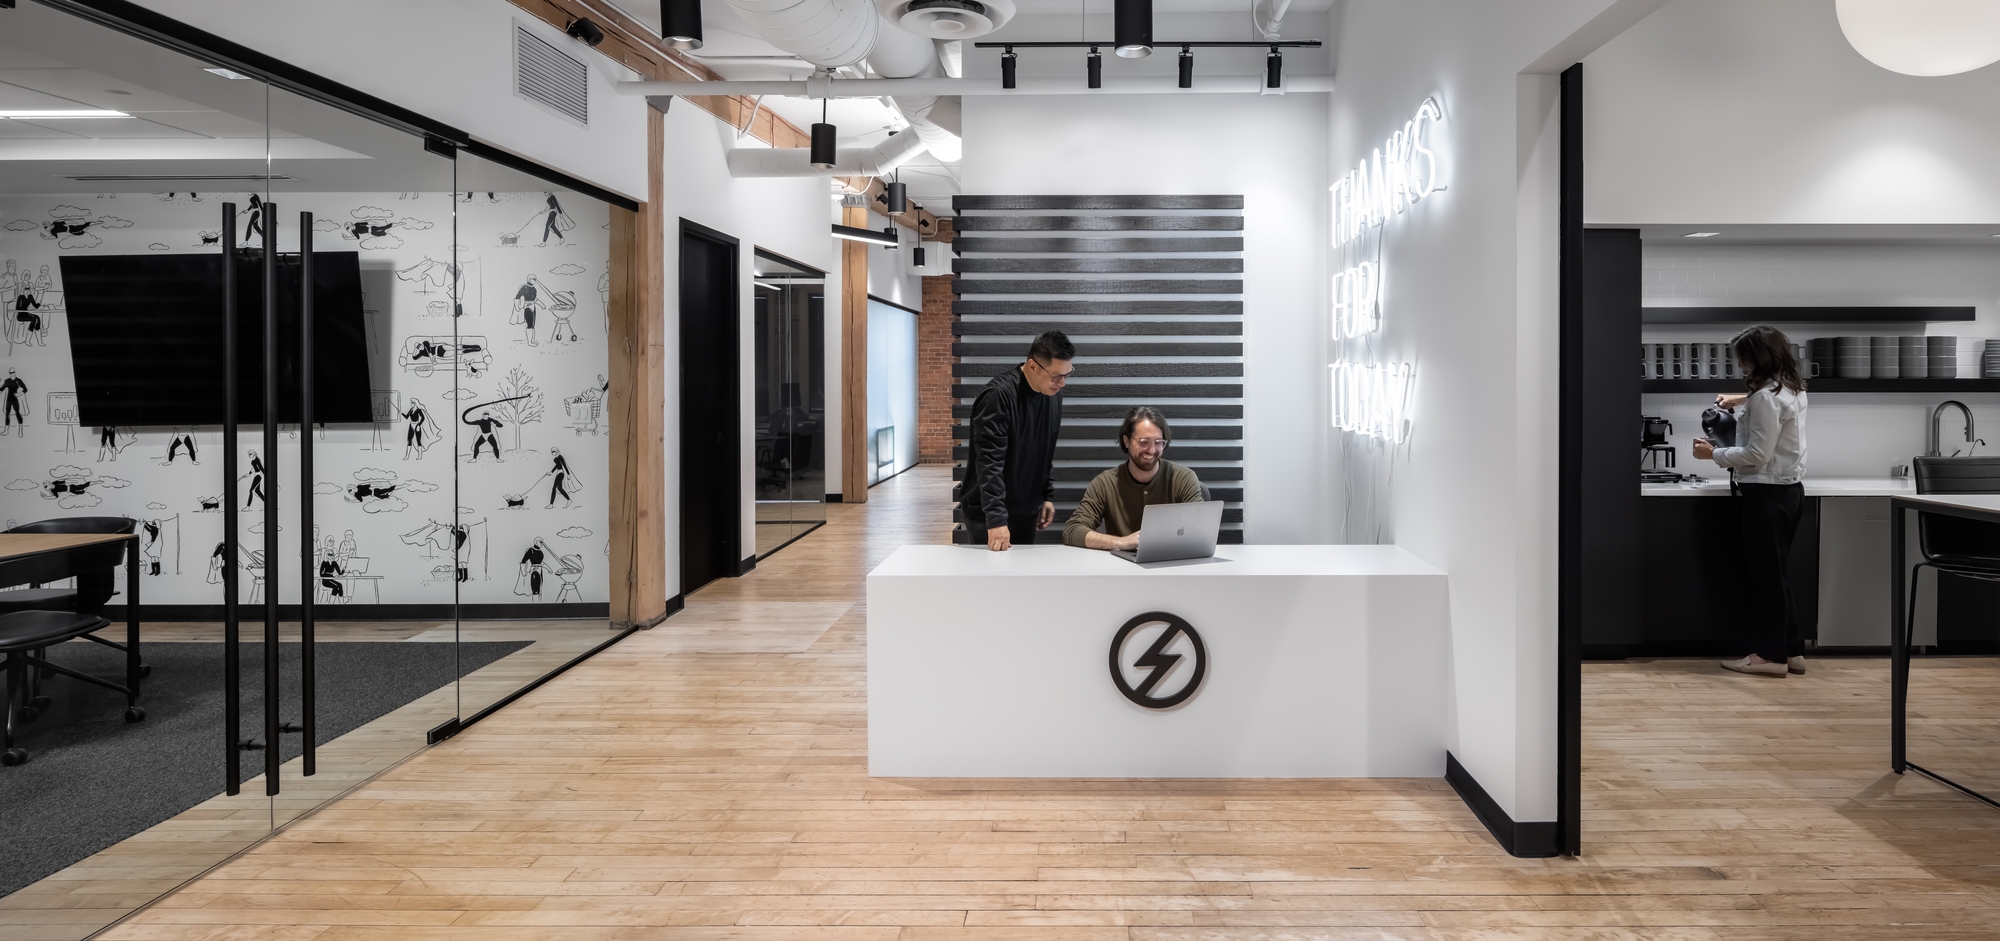 超人办公室——明尼阿波利斯|ART-Arrakis | 建筑室内设计的创新与灵感